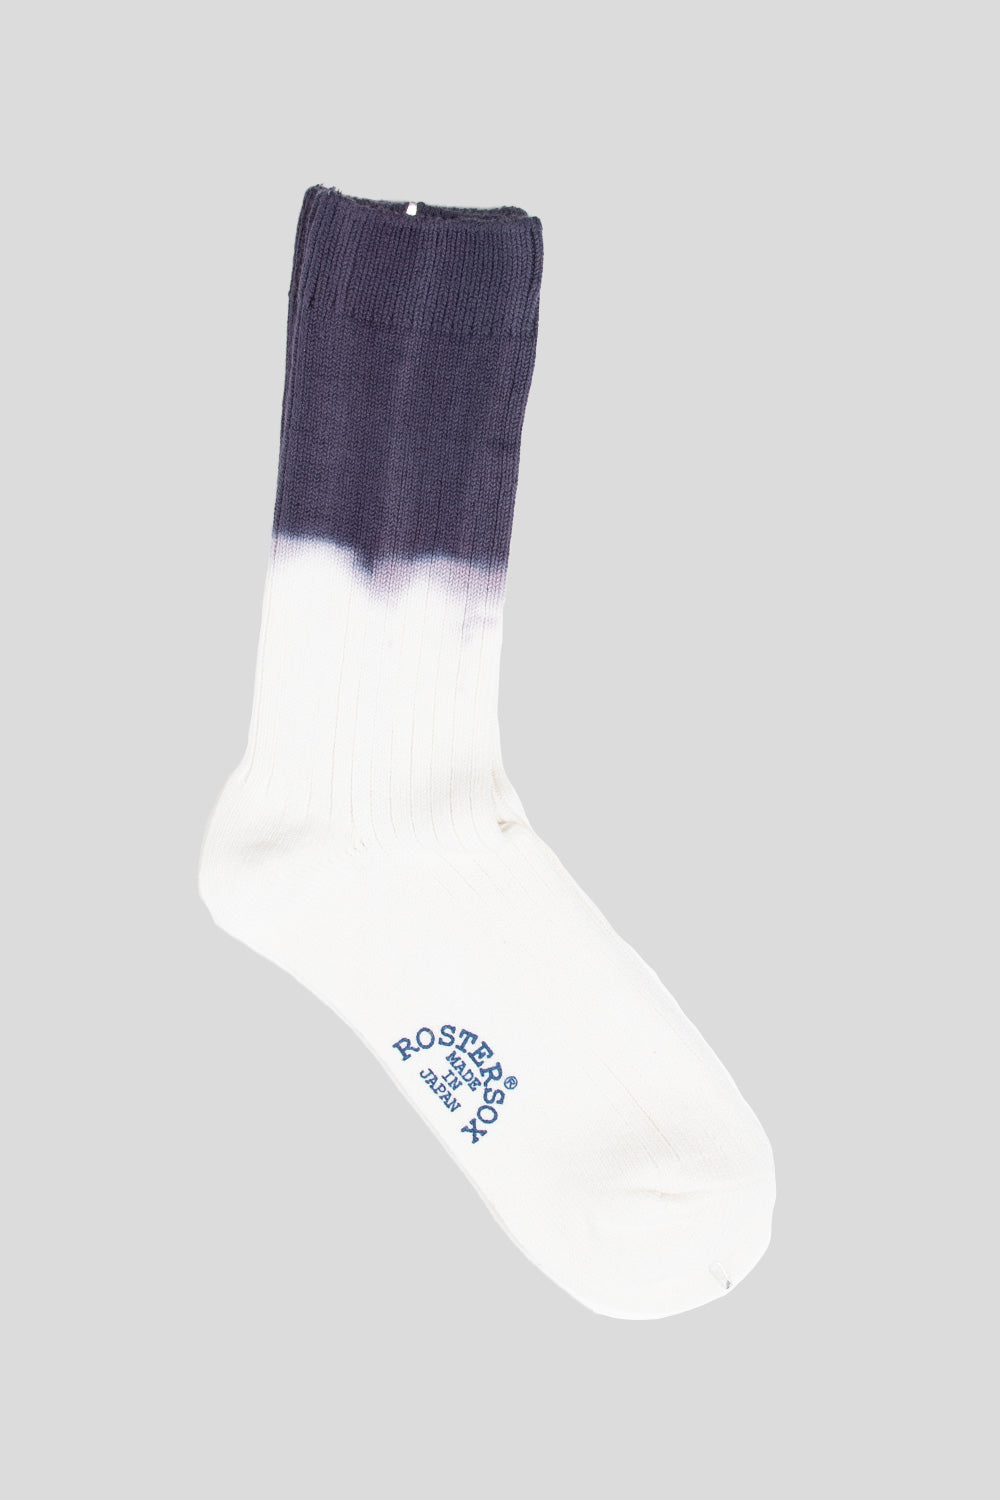 Rostersox HRD Rib Socks in Purple